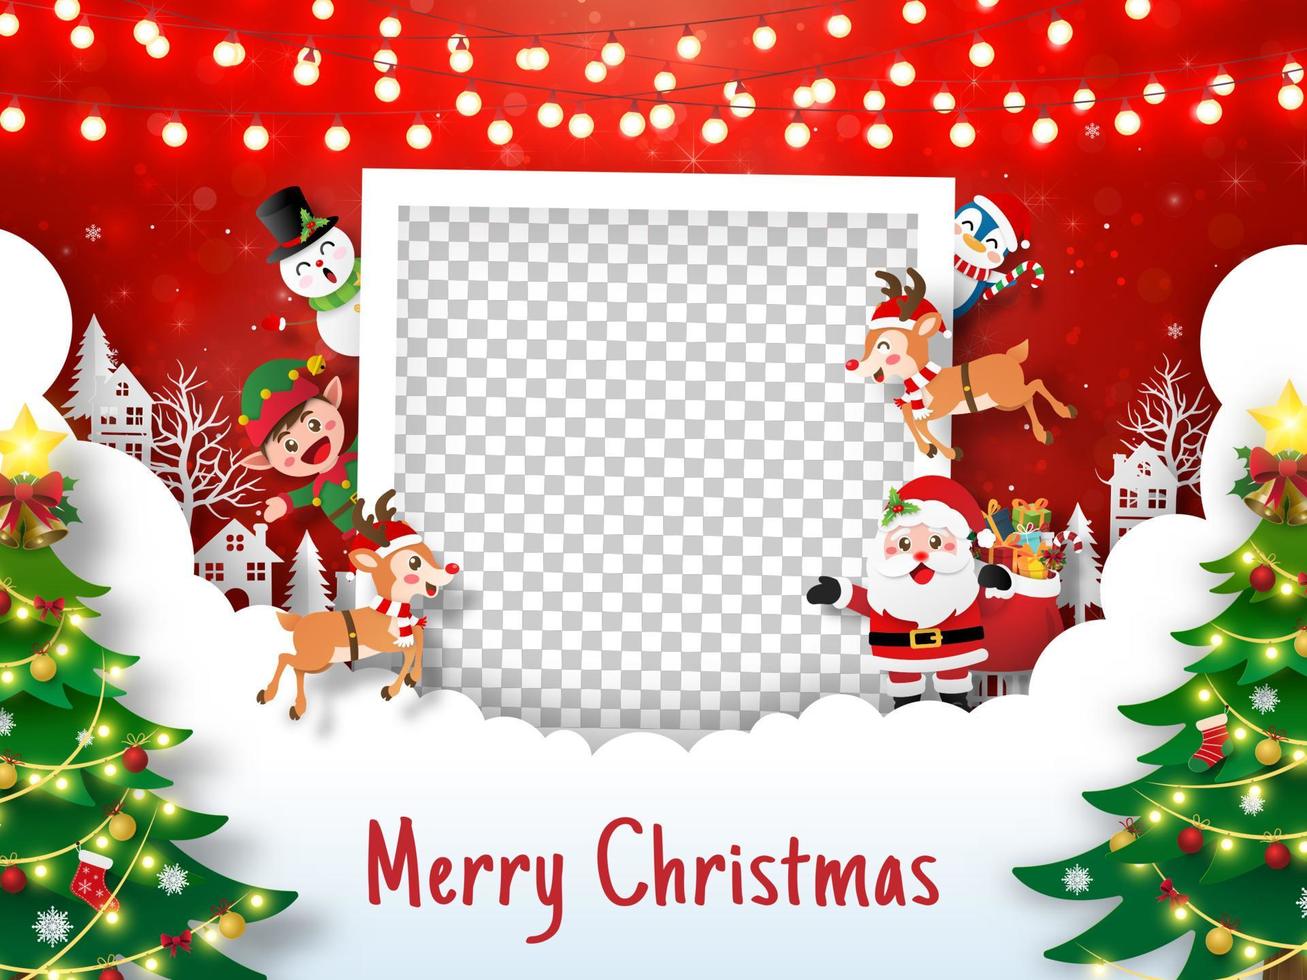 god jul och gott nytt år, julvykort med fotoram med jultomten och vänner, papperskonststil vektor